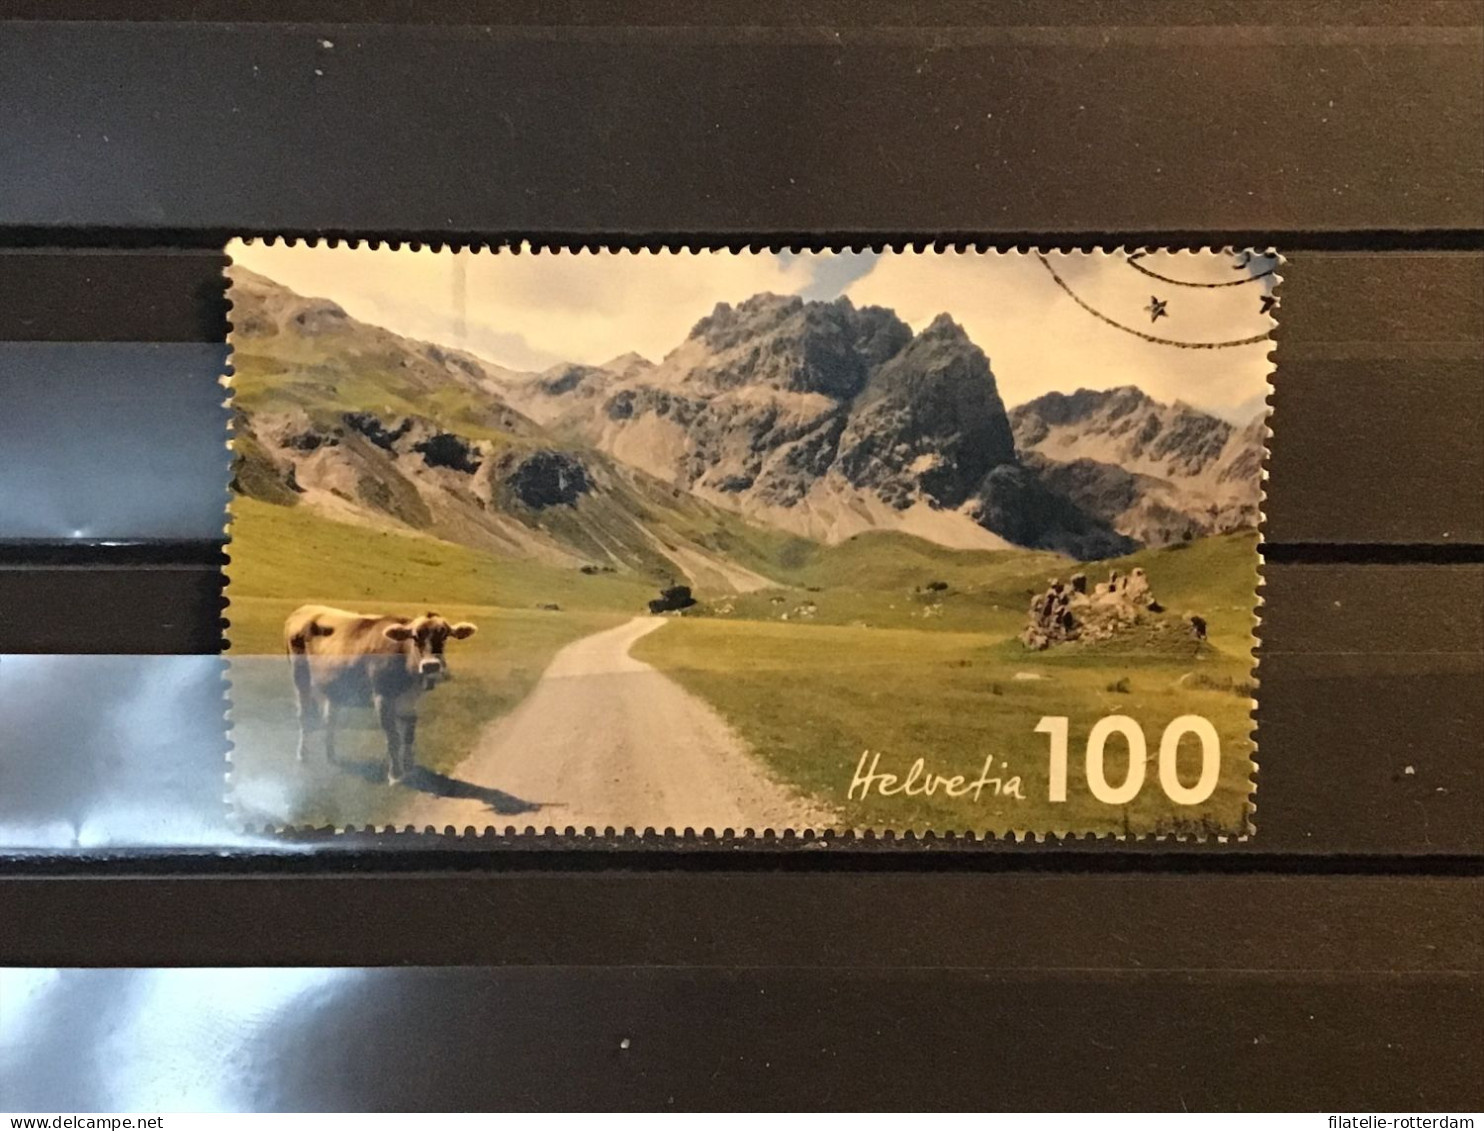 Switzerland / Zwitserland - Mountains (100) 2019 - Gebruikt